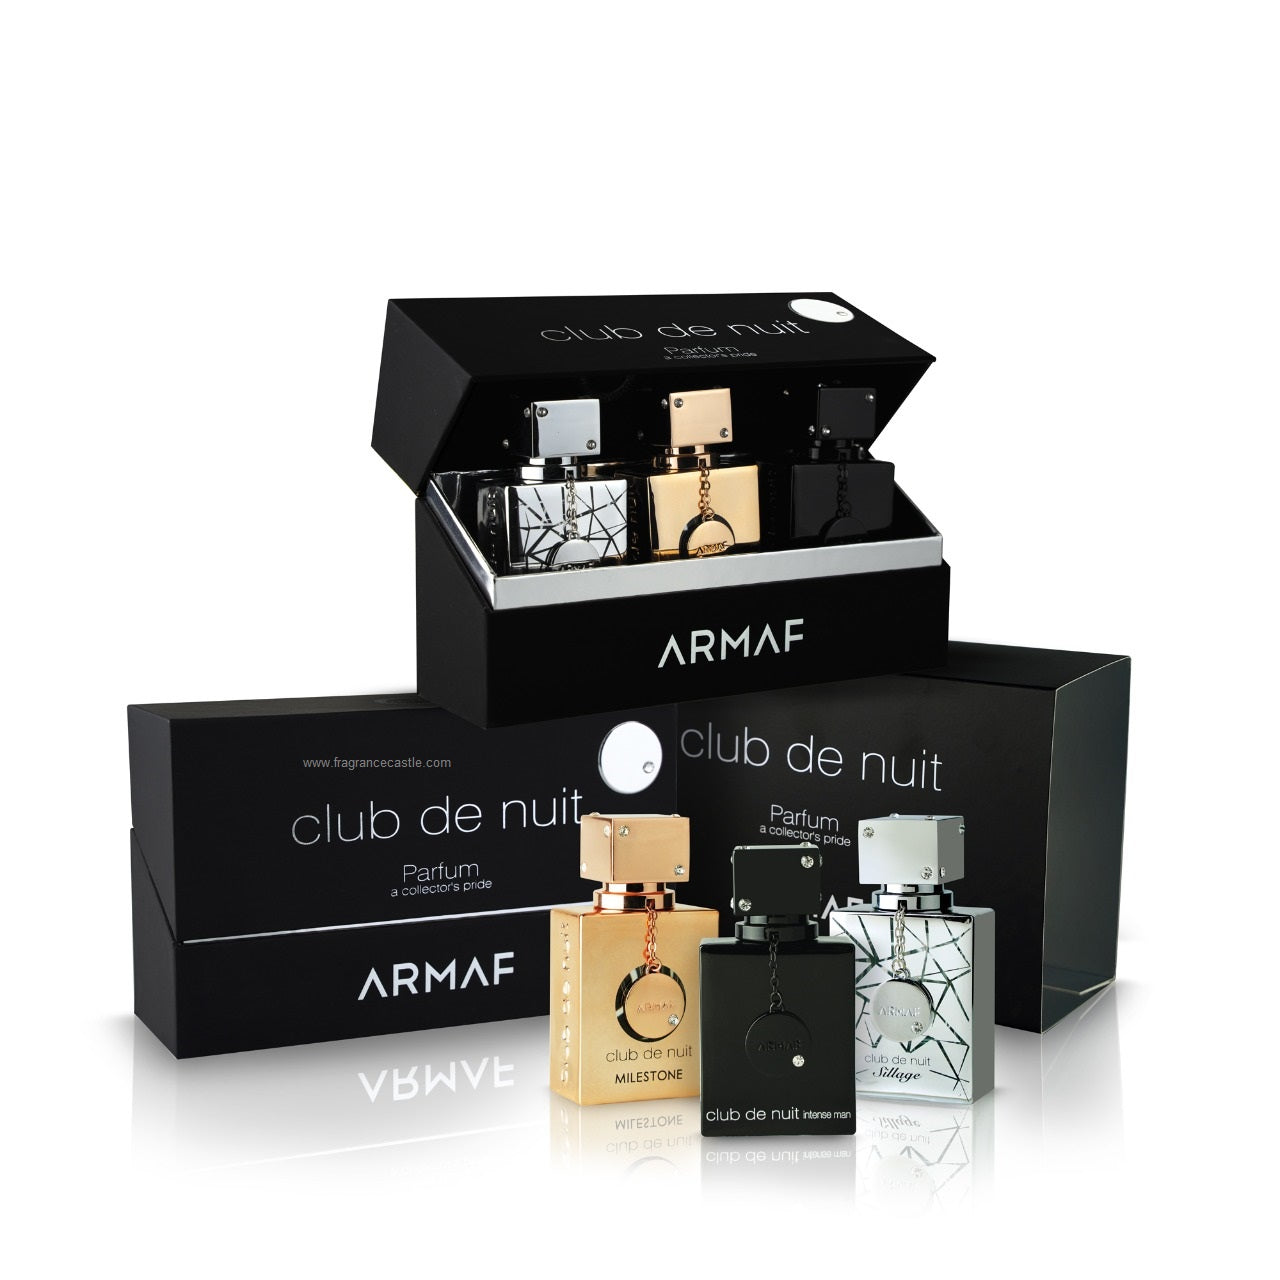 Armaf - Club De Nuit Parfum: A Collector’s Pride - Limited Edition - 30ML X 3PCS